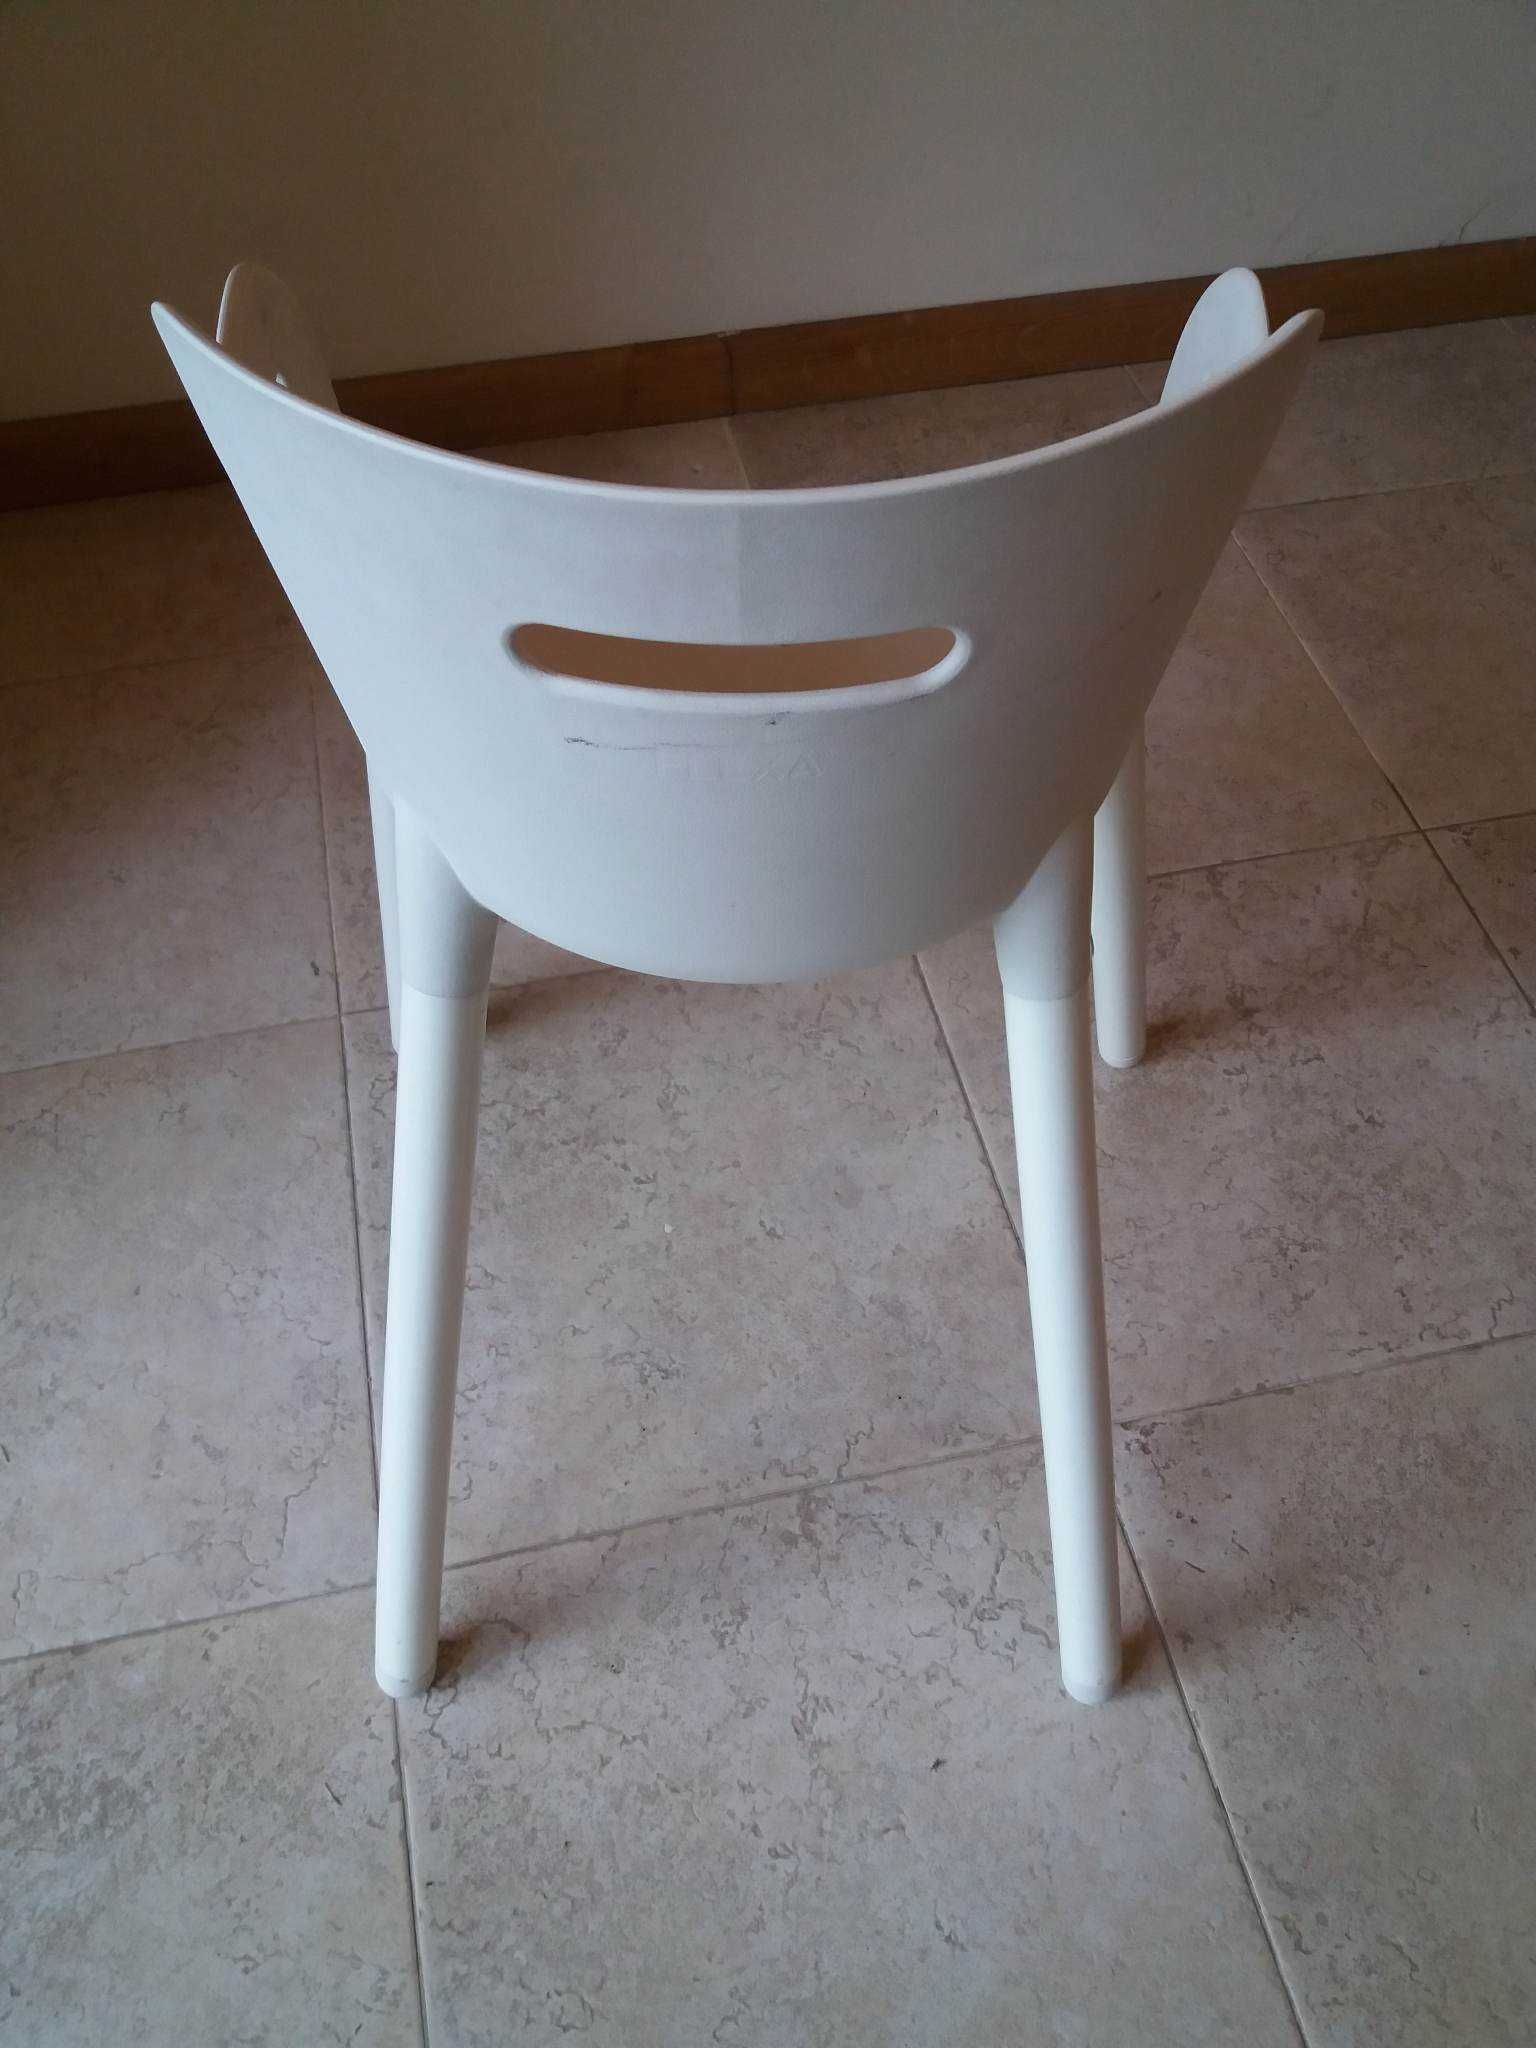 Markowe krzesełko dziecięce FLEXA krzesło